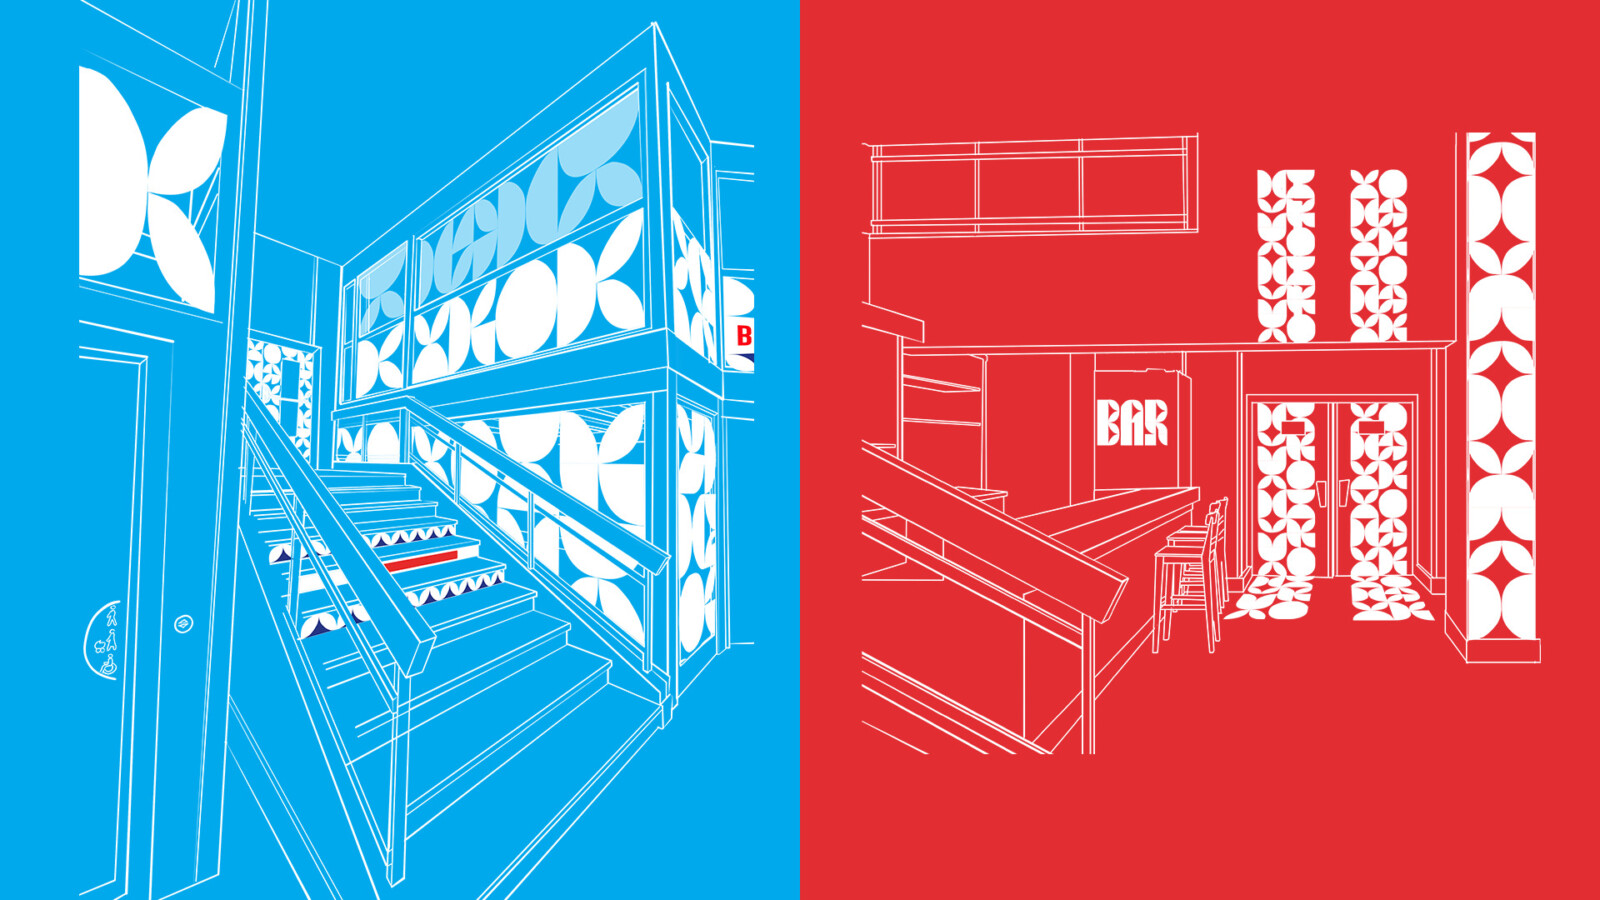 Illustrations représentant l’escalier et le bar du Théâtre Chevilly-Larue, la première sur fond bleu, la seconde sur fond rouge. La signalétique au motif emblématique figure en blanc.